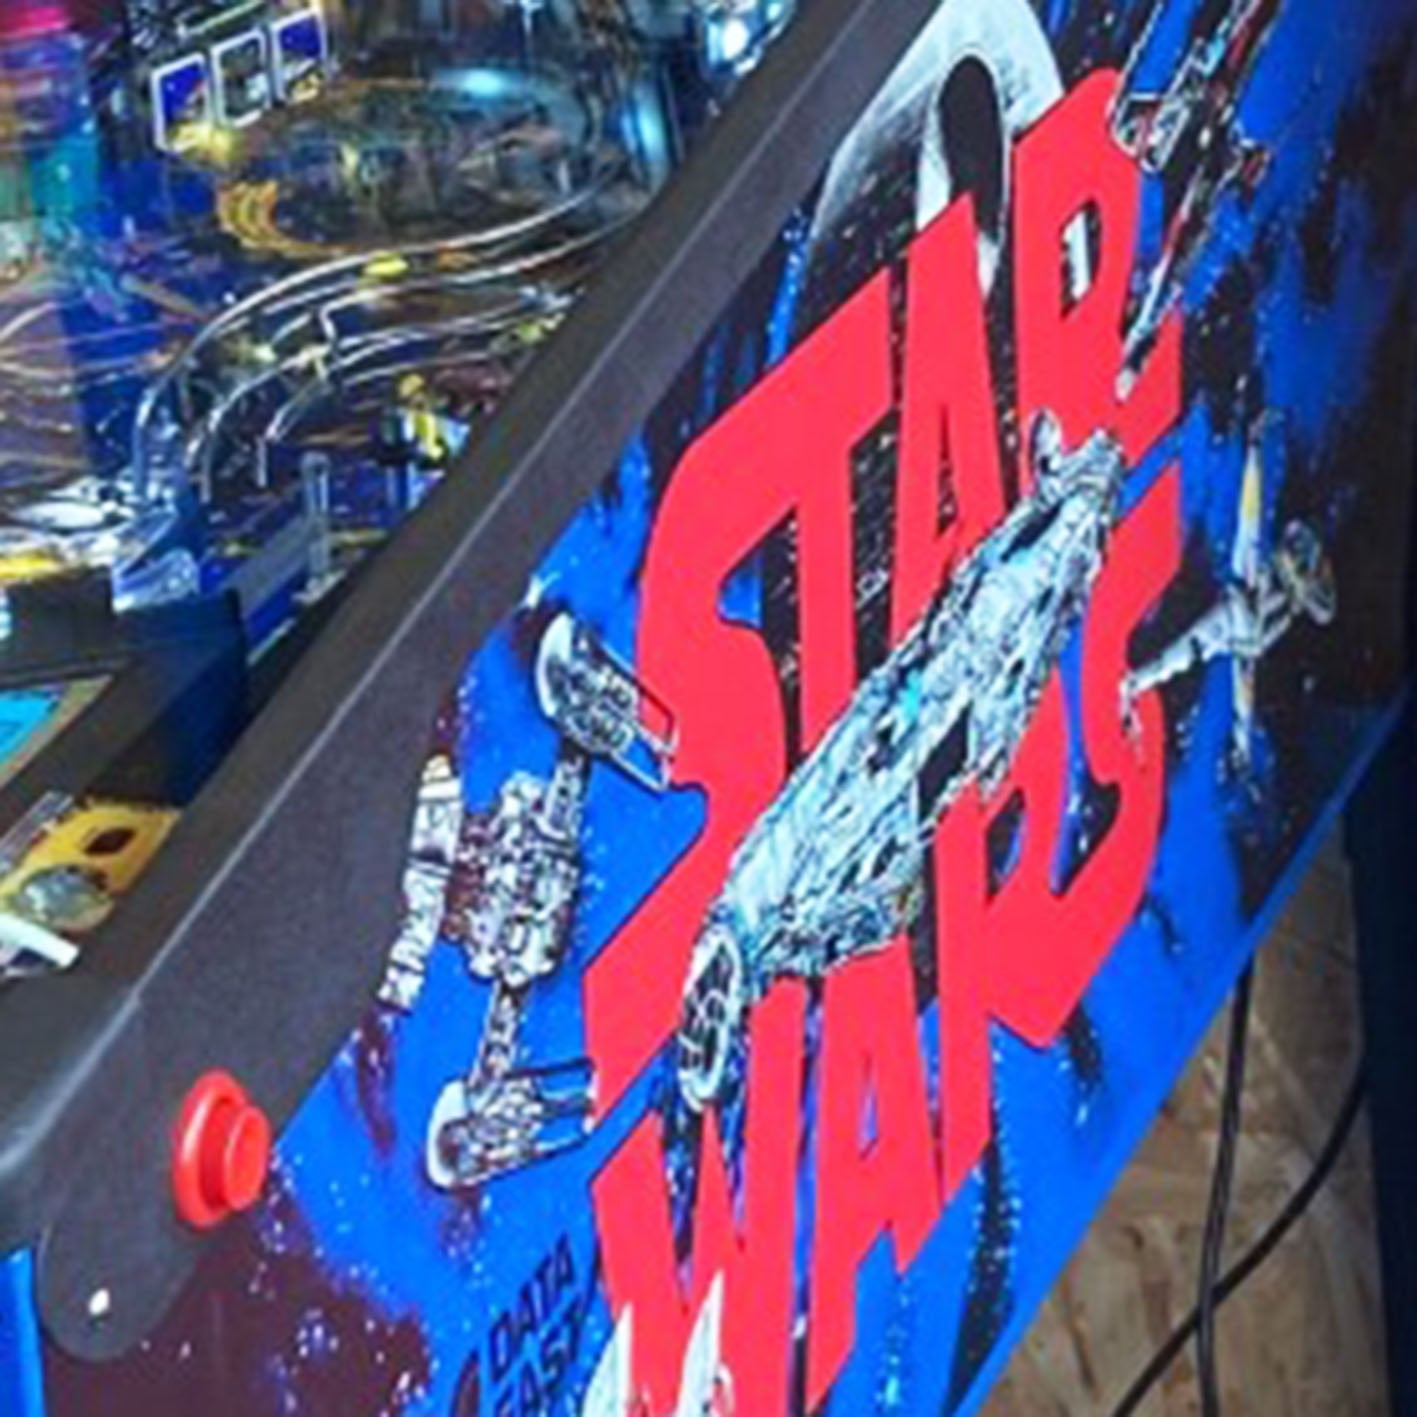 1992 Star Wars Pinball Machine by Data East